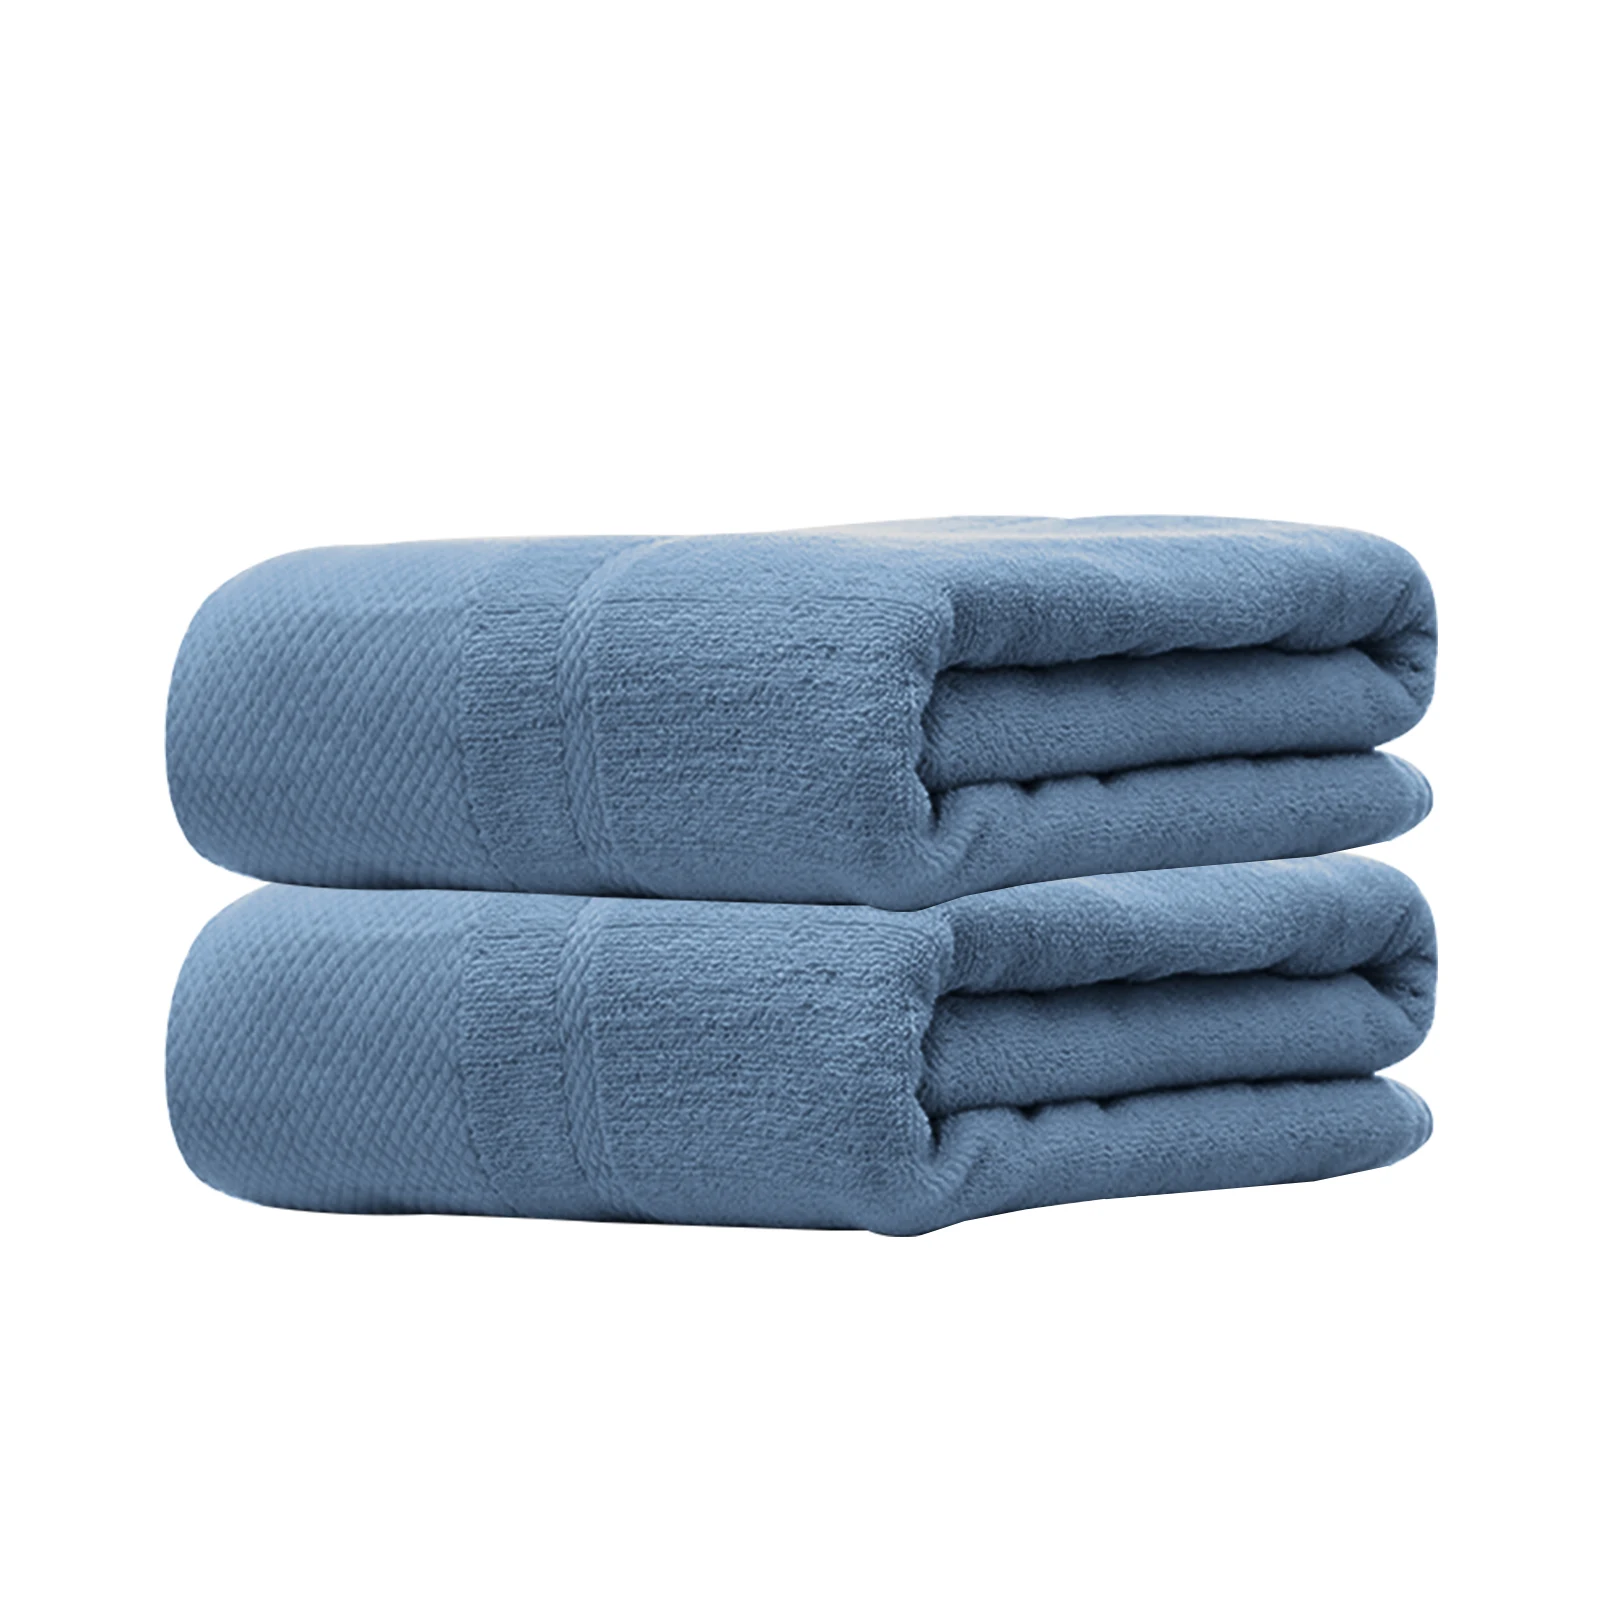 2 комплекта полотенце для сухой шерсти дома гостиницы путешествий ванной душа - Фото №1